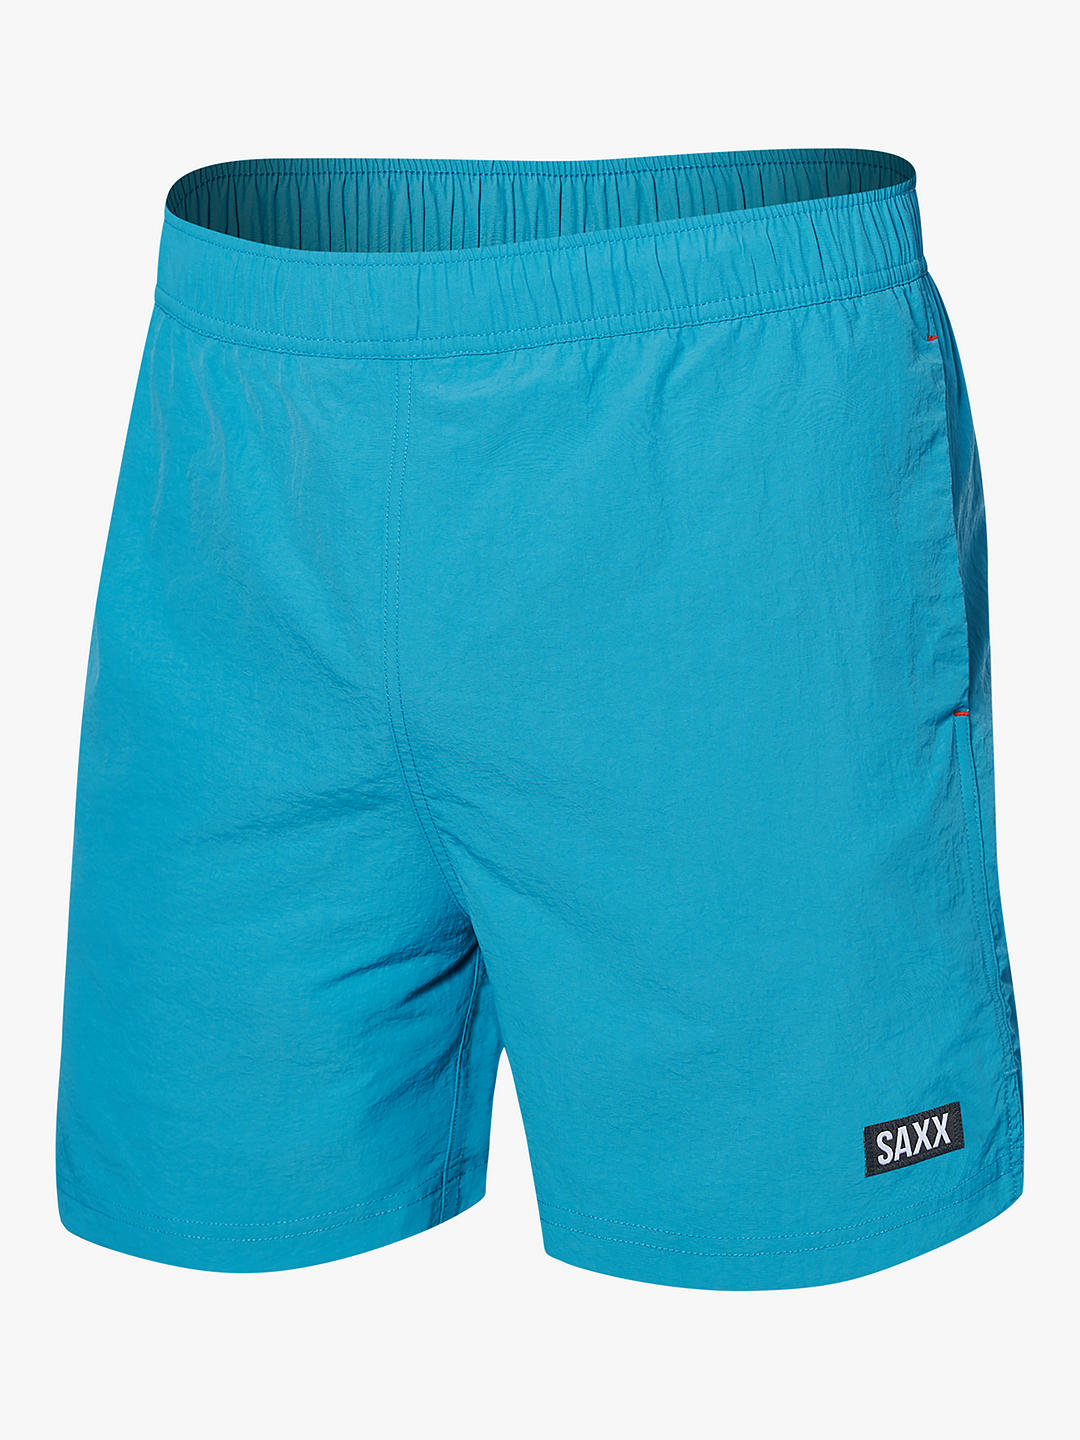 SAXX Go Coastal 2N1 Volley Swim Shorts, Blue